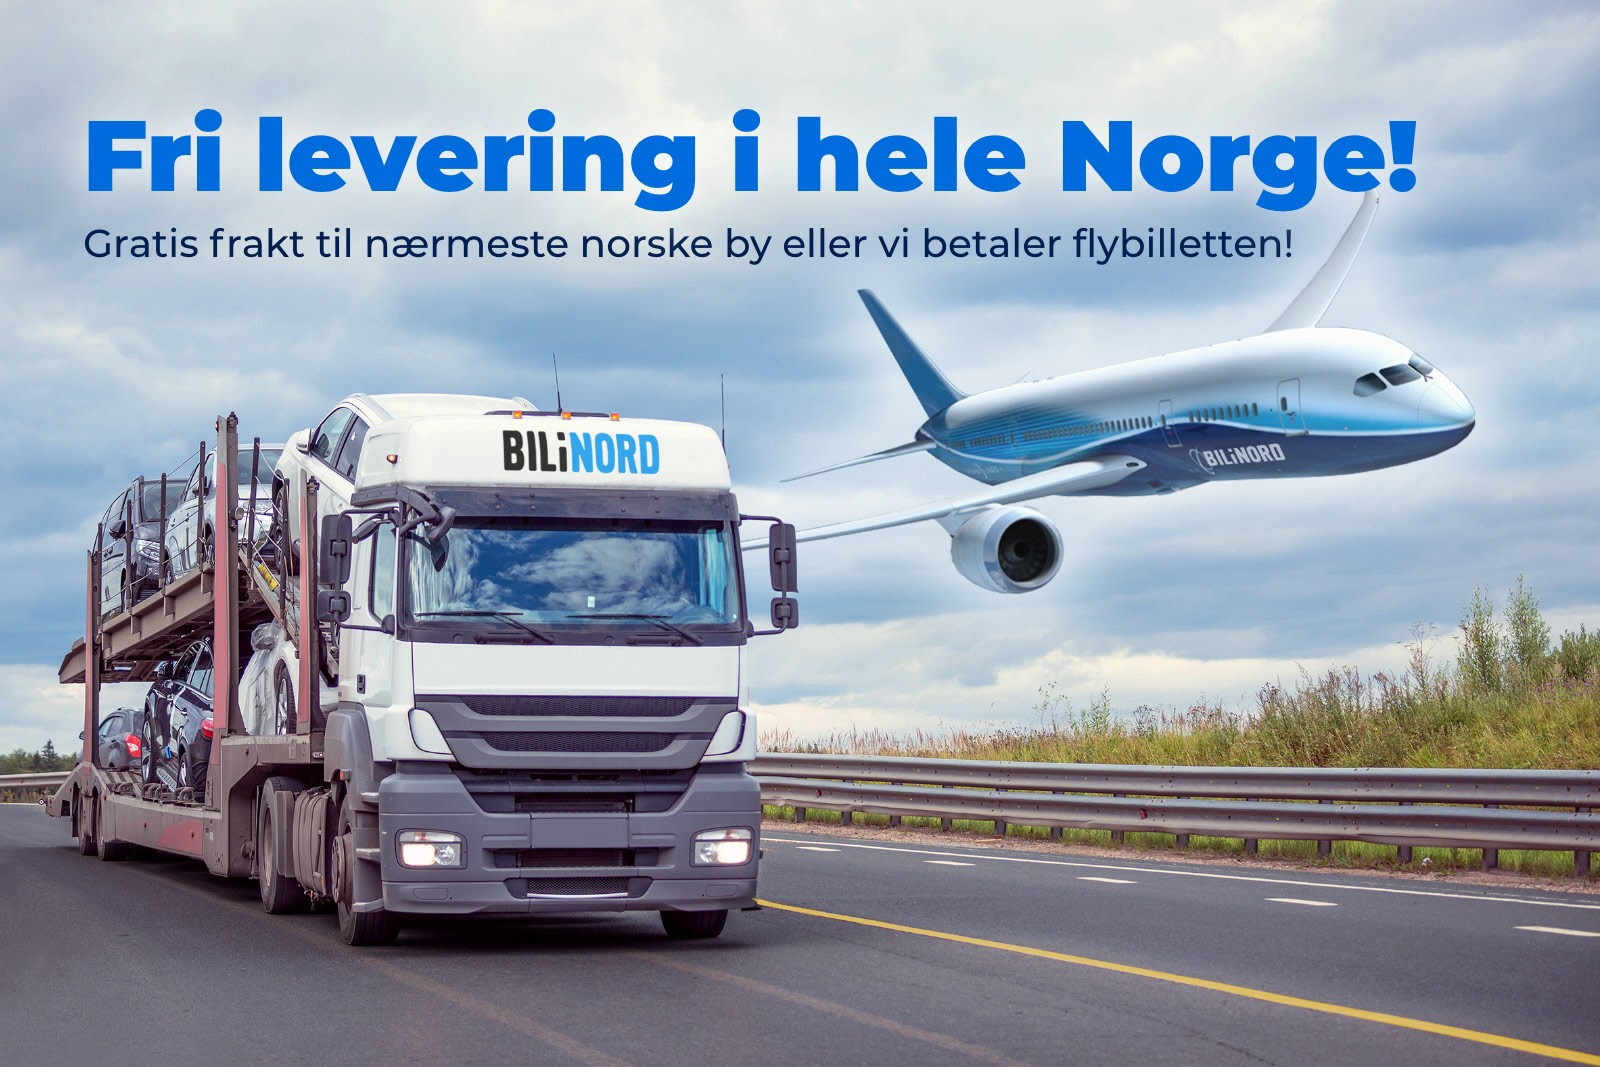 Fri levering i hele Norge